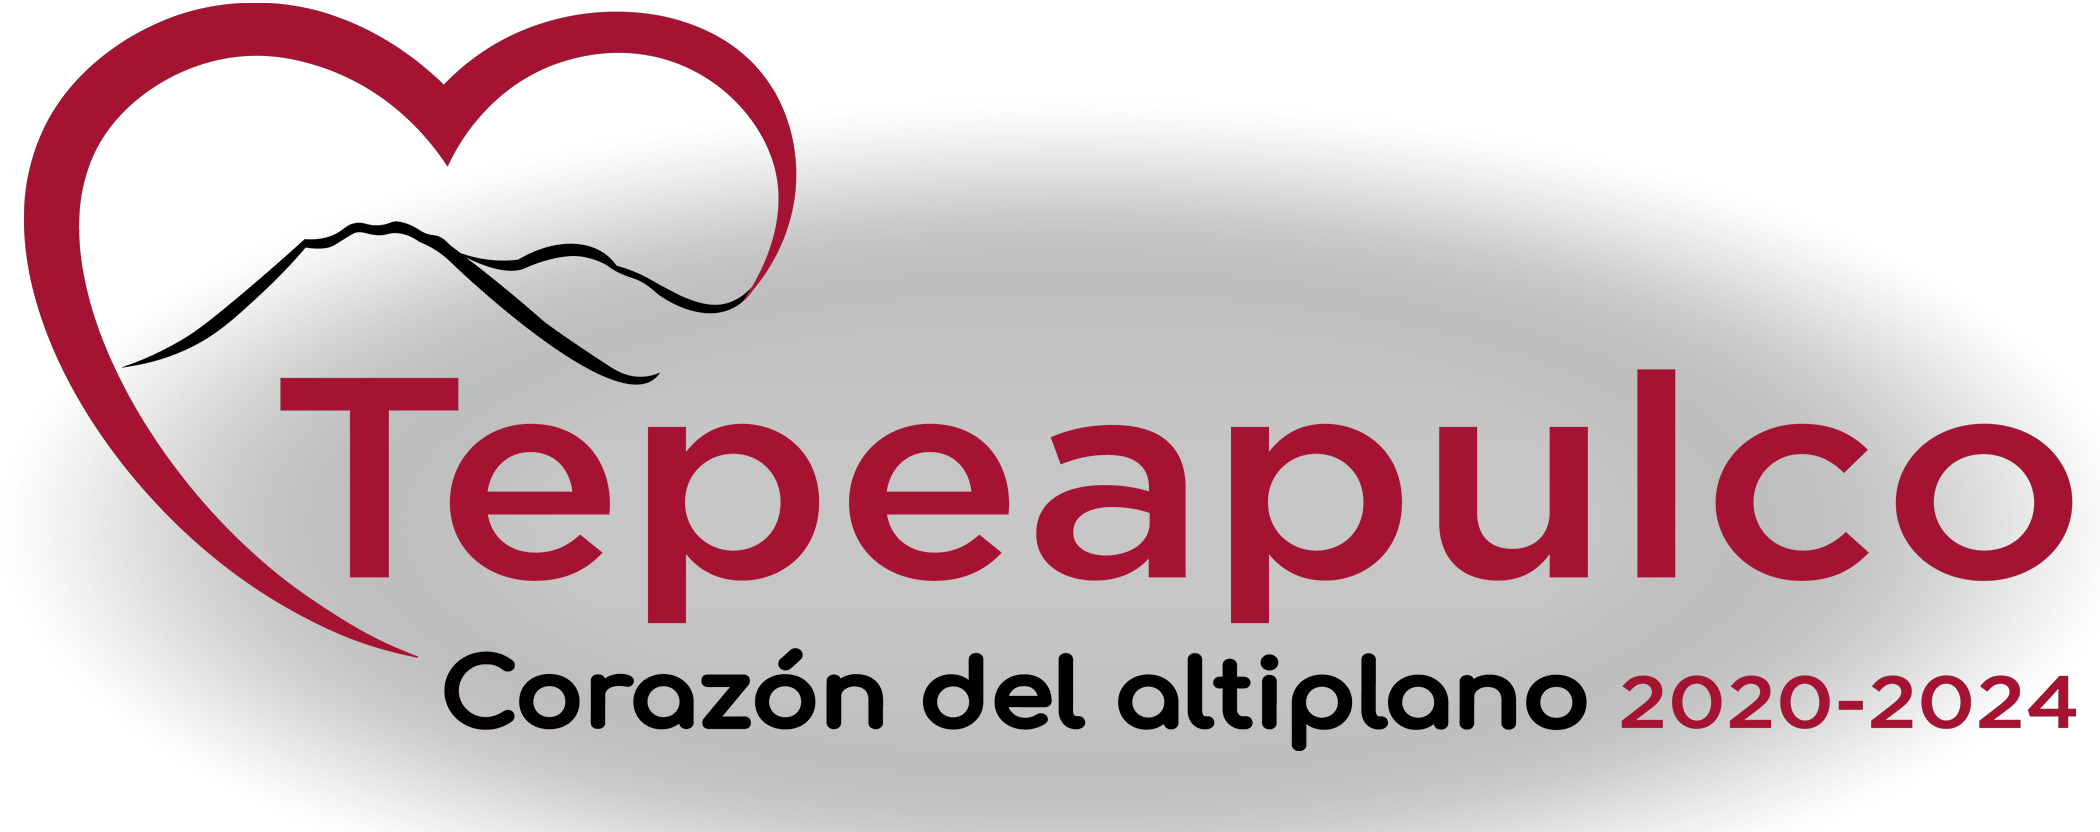 Logotipo Tepeapulco